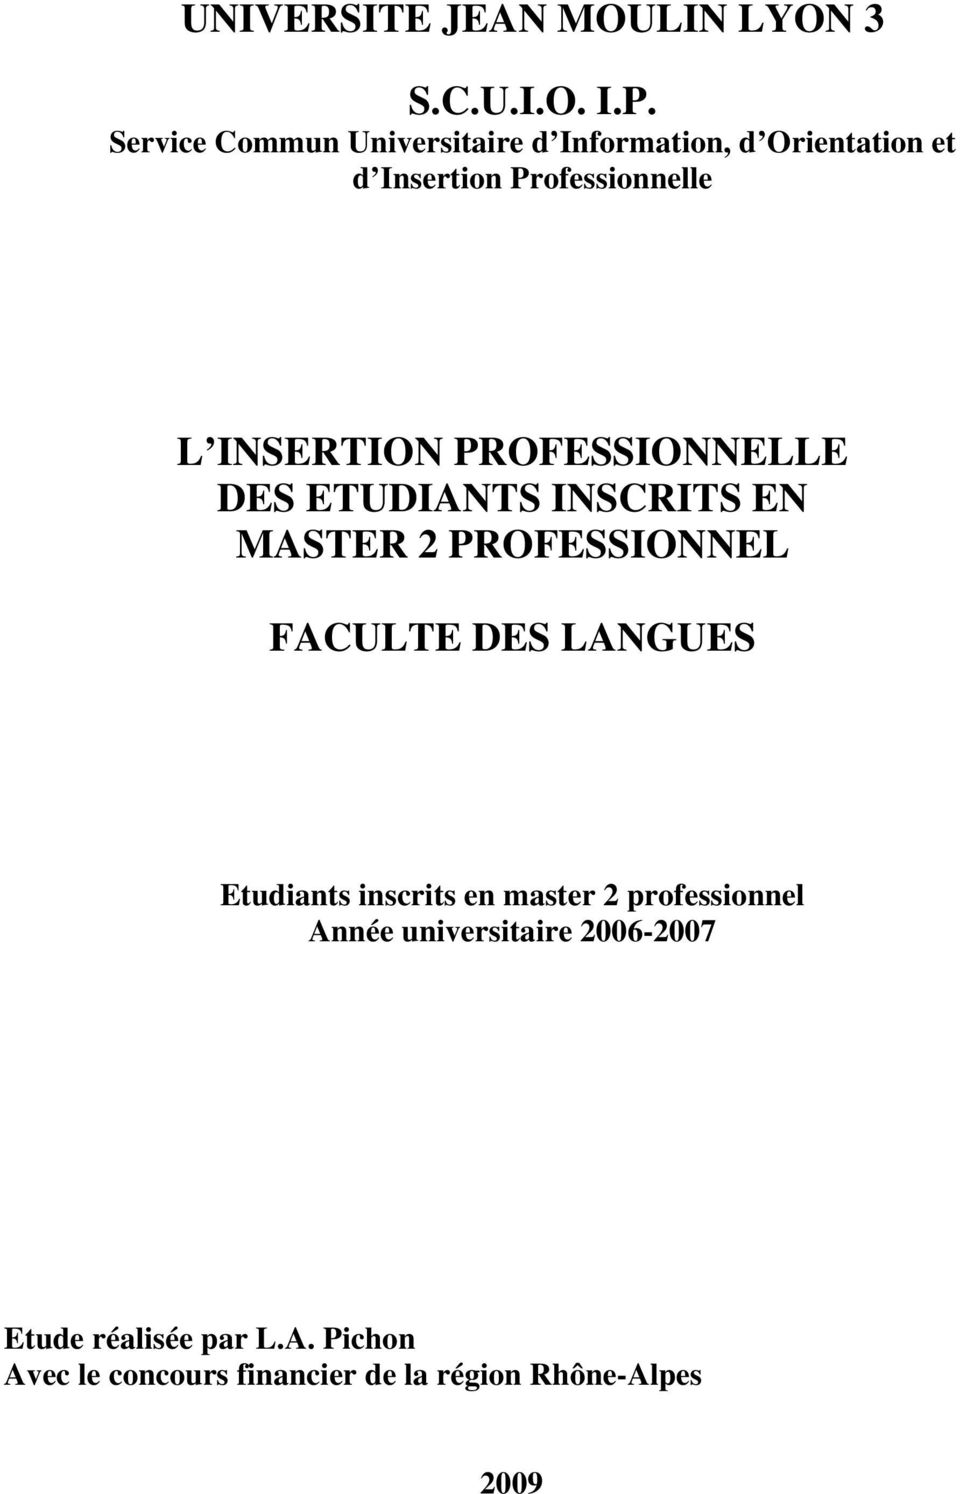 INSERTION PROFESSIONNELLE DES ETUDIANTS INSCRITS EN MASTER 2 PROFESSIONNEL FACULTE DES LANGUES